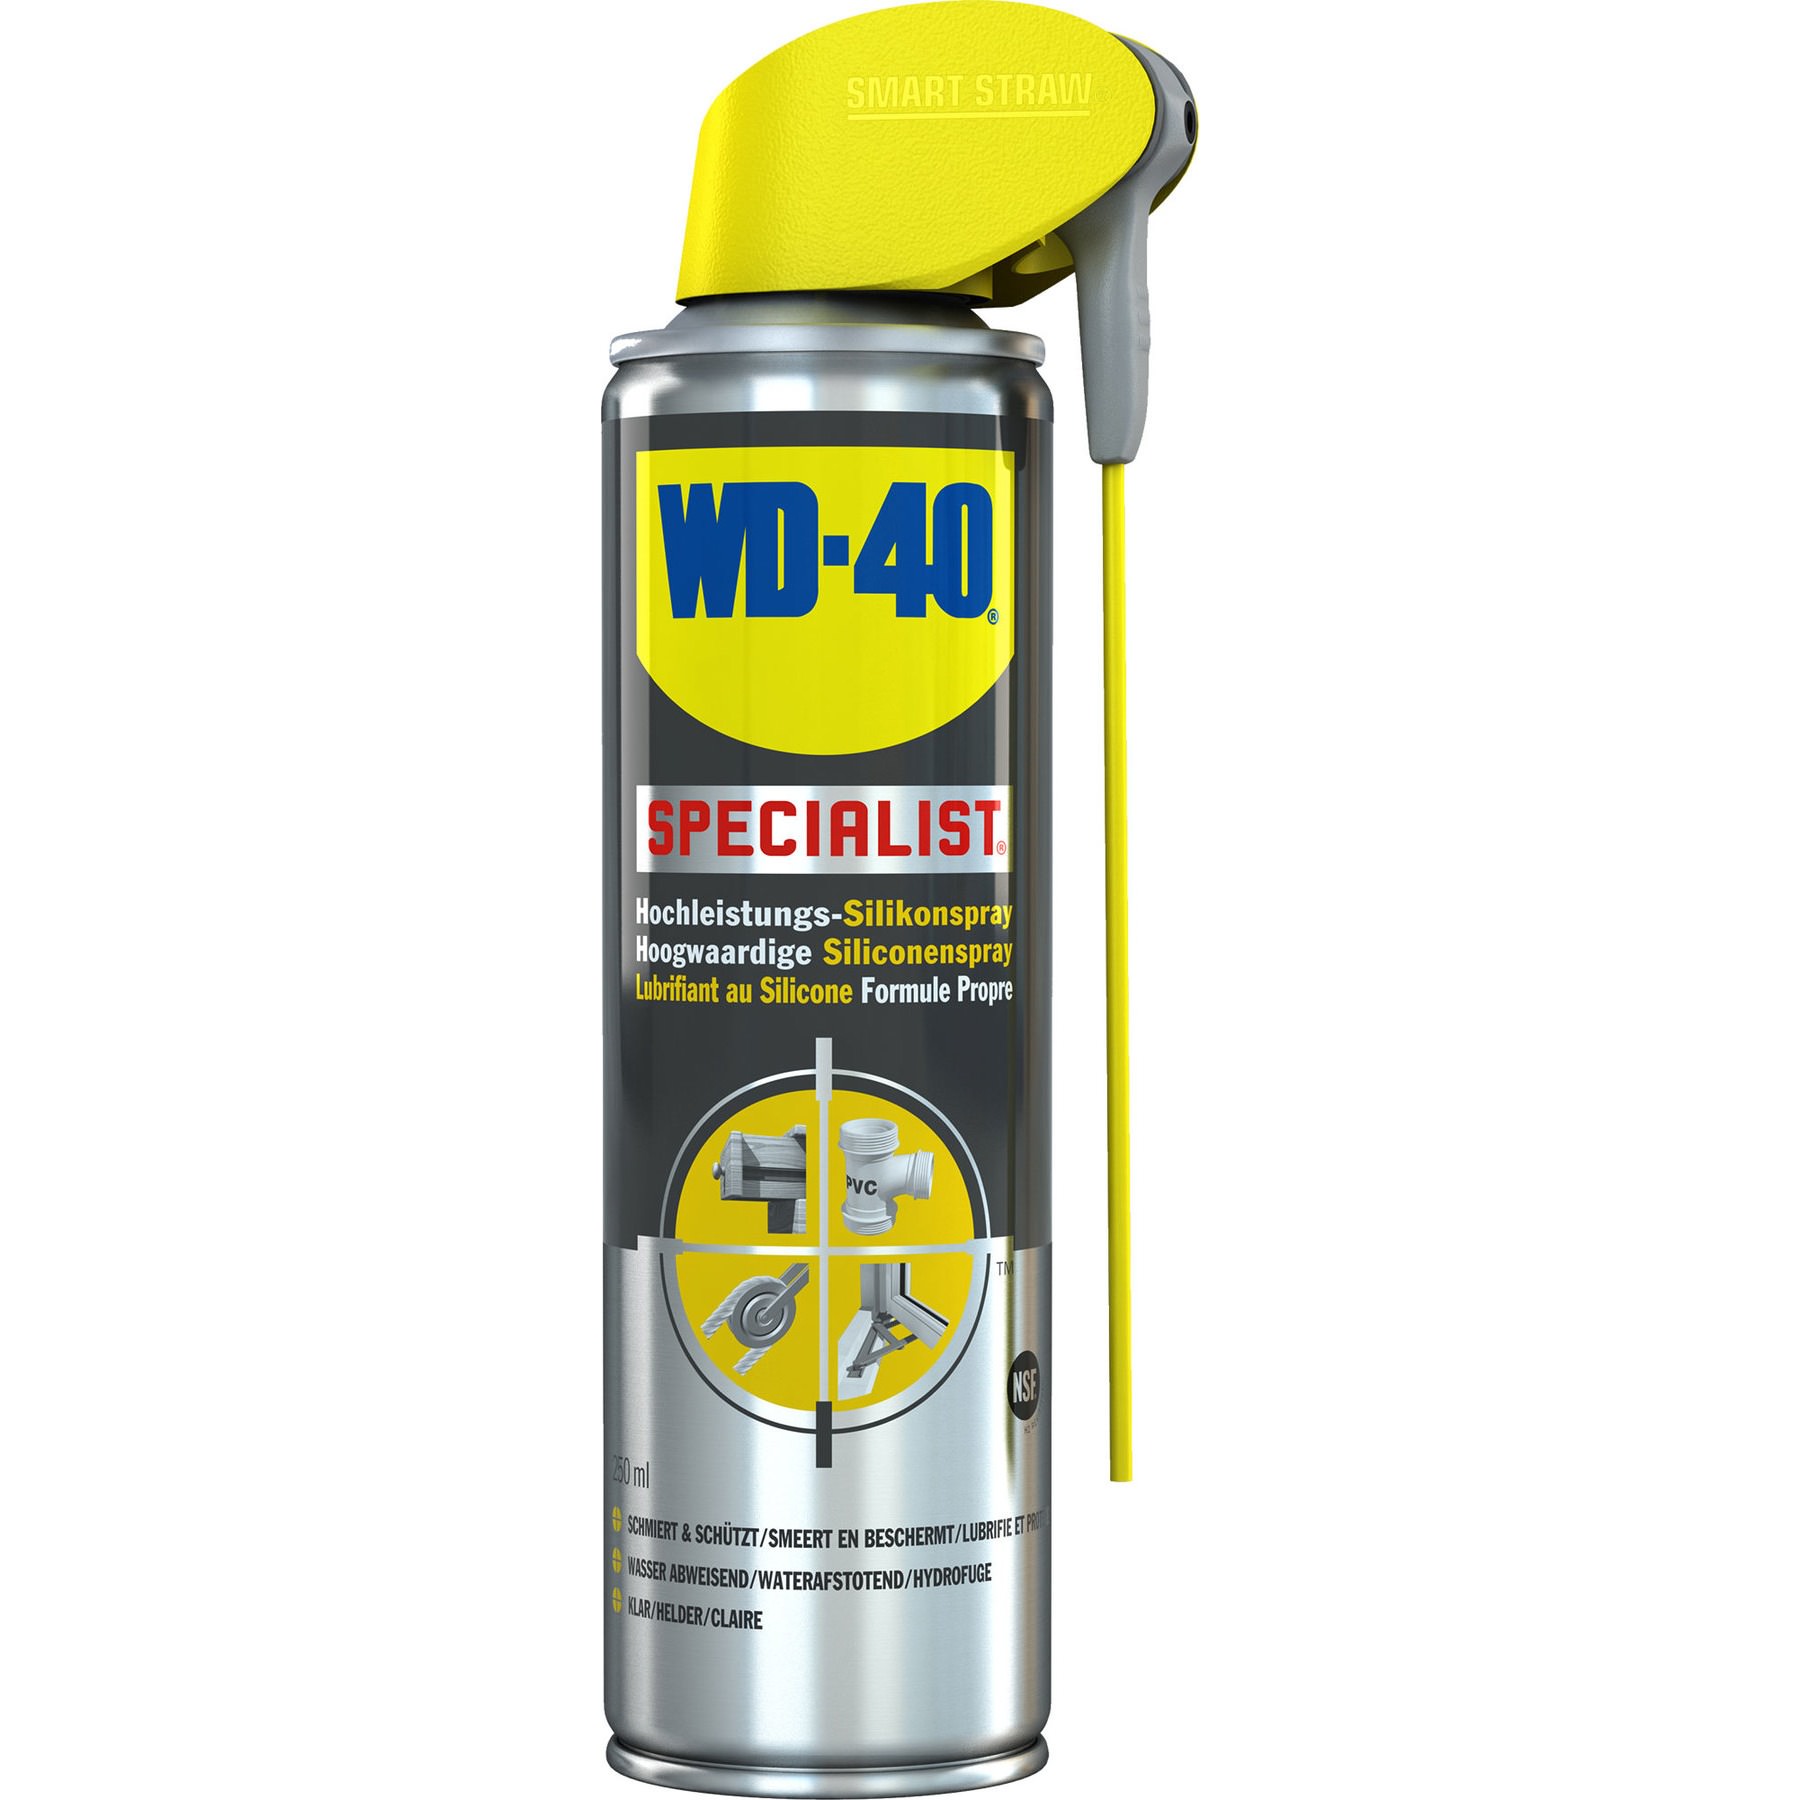 WD-40 Spray Lubrifiant au Silicone Specialist, 100 ml 